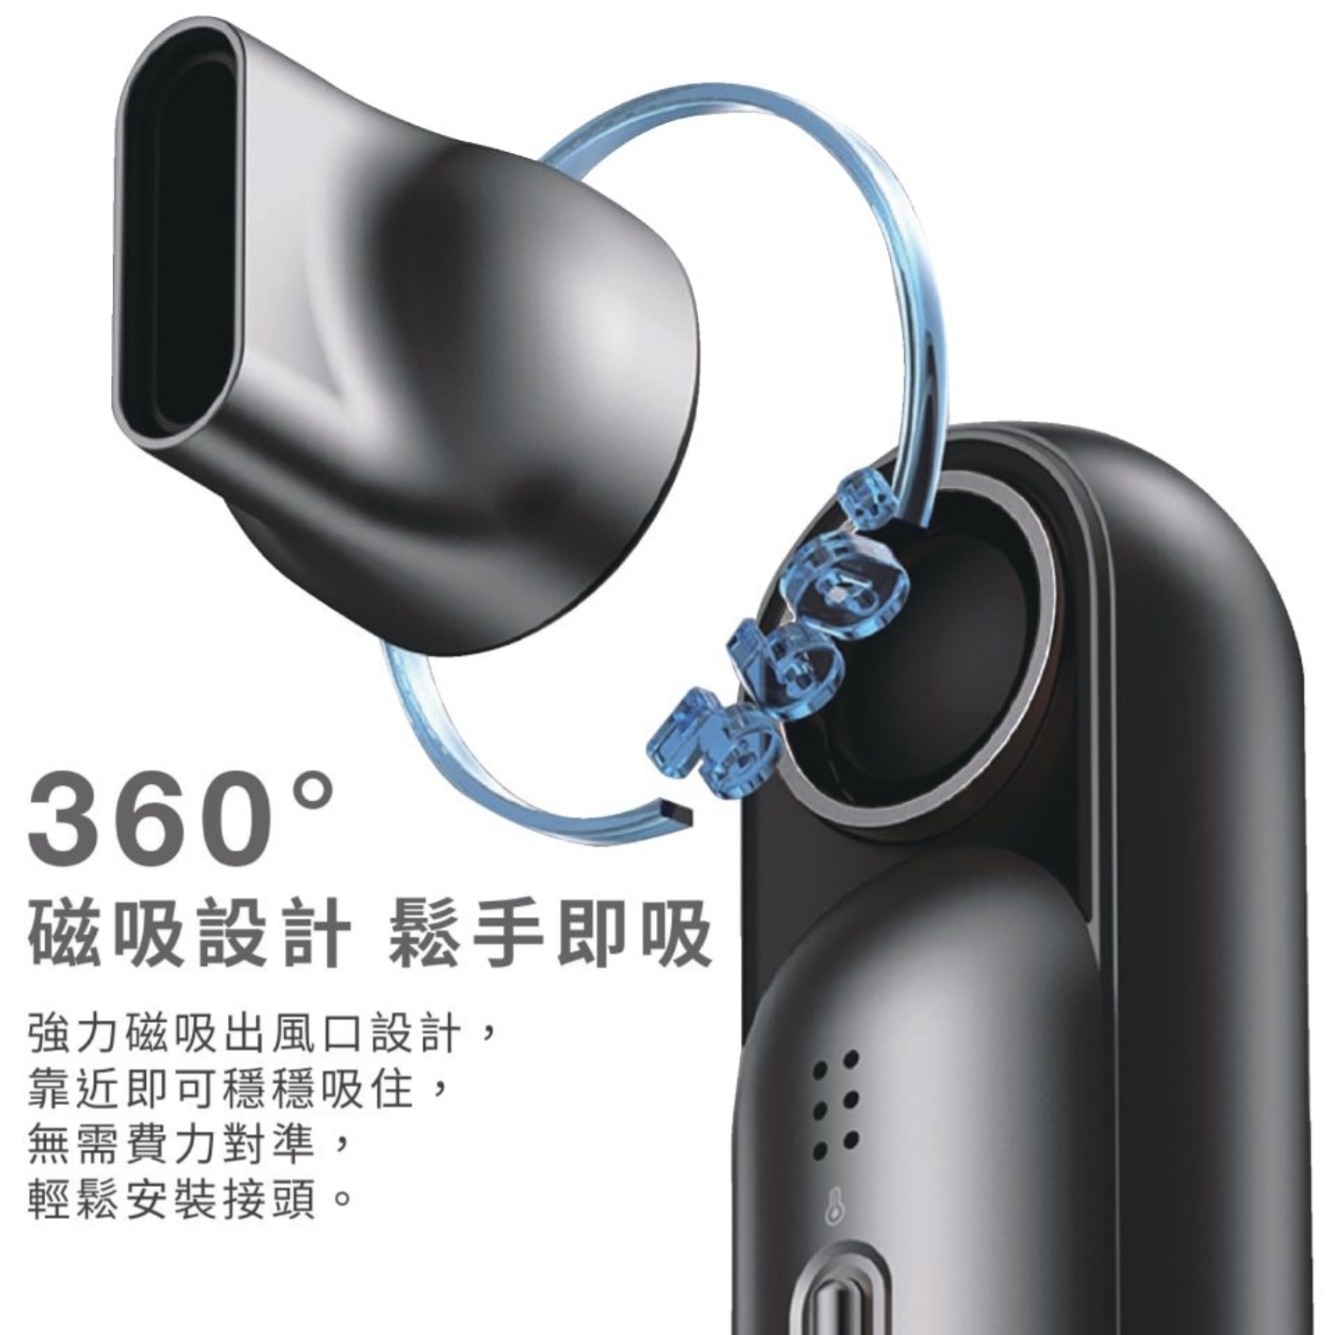 360磁吸設計 鬆手即吸強力磁吸出風口設計,靠近即可穩穩吸住,無需費力對準:輕鬆安裝接頭